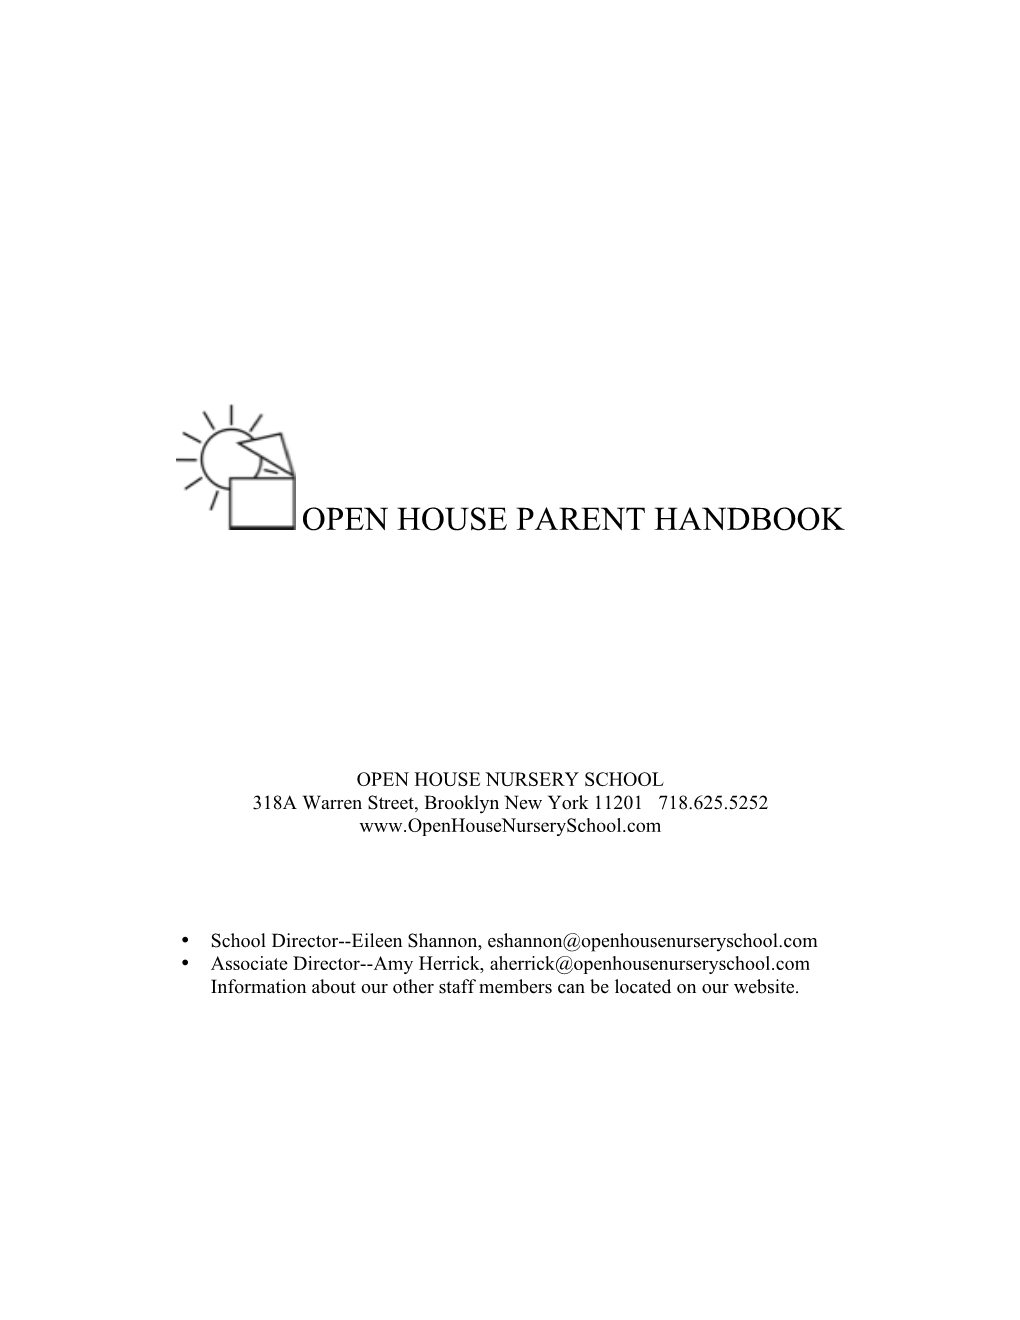 Open House Parent Handbook